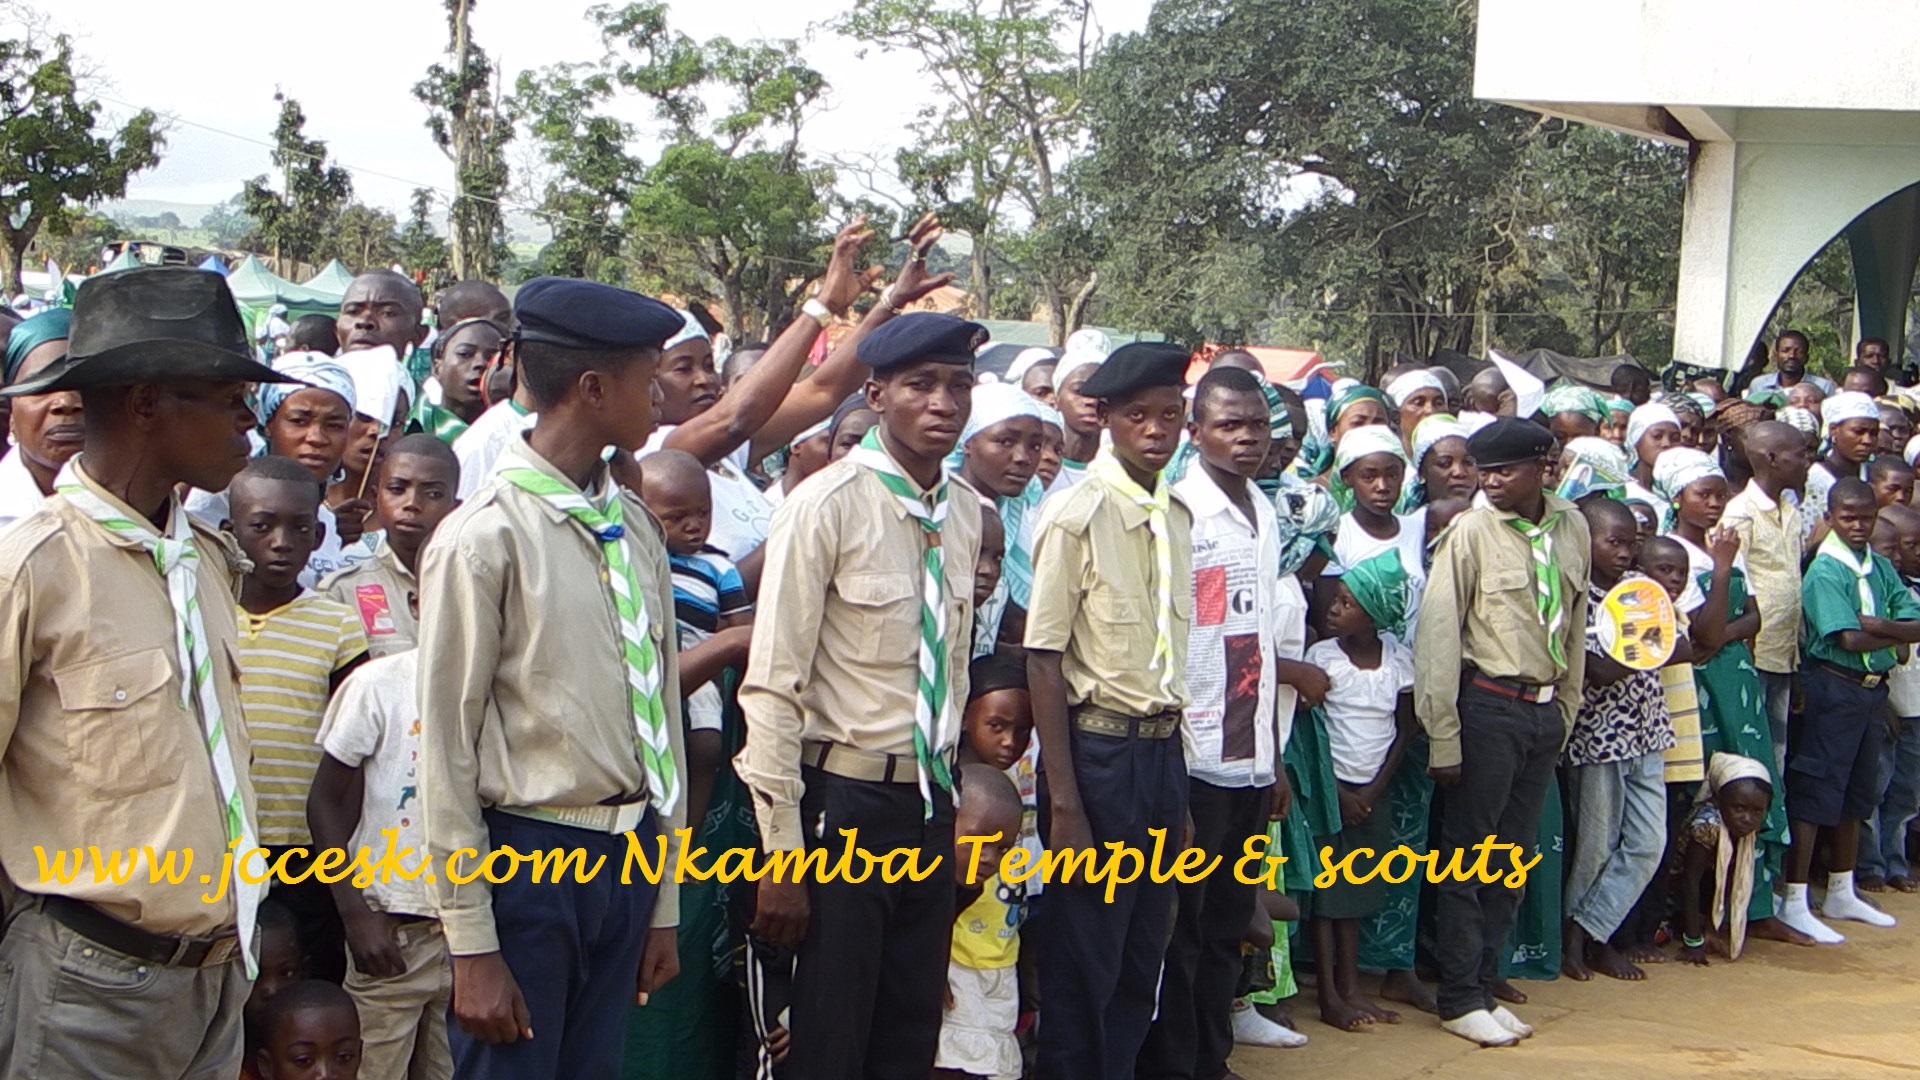 www.jccesk.com_Nkamba_Temple_Scouts Nkamba New Jerusalem